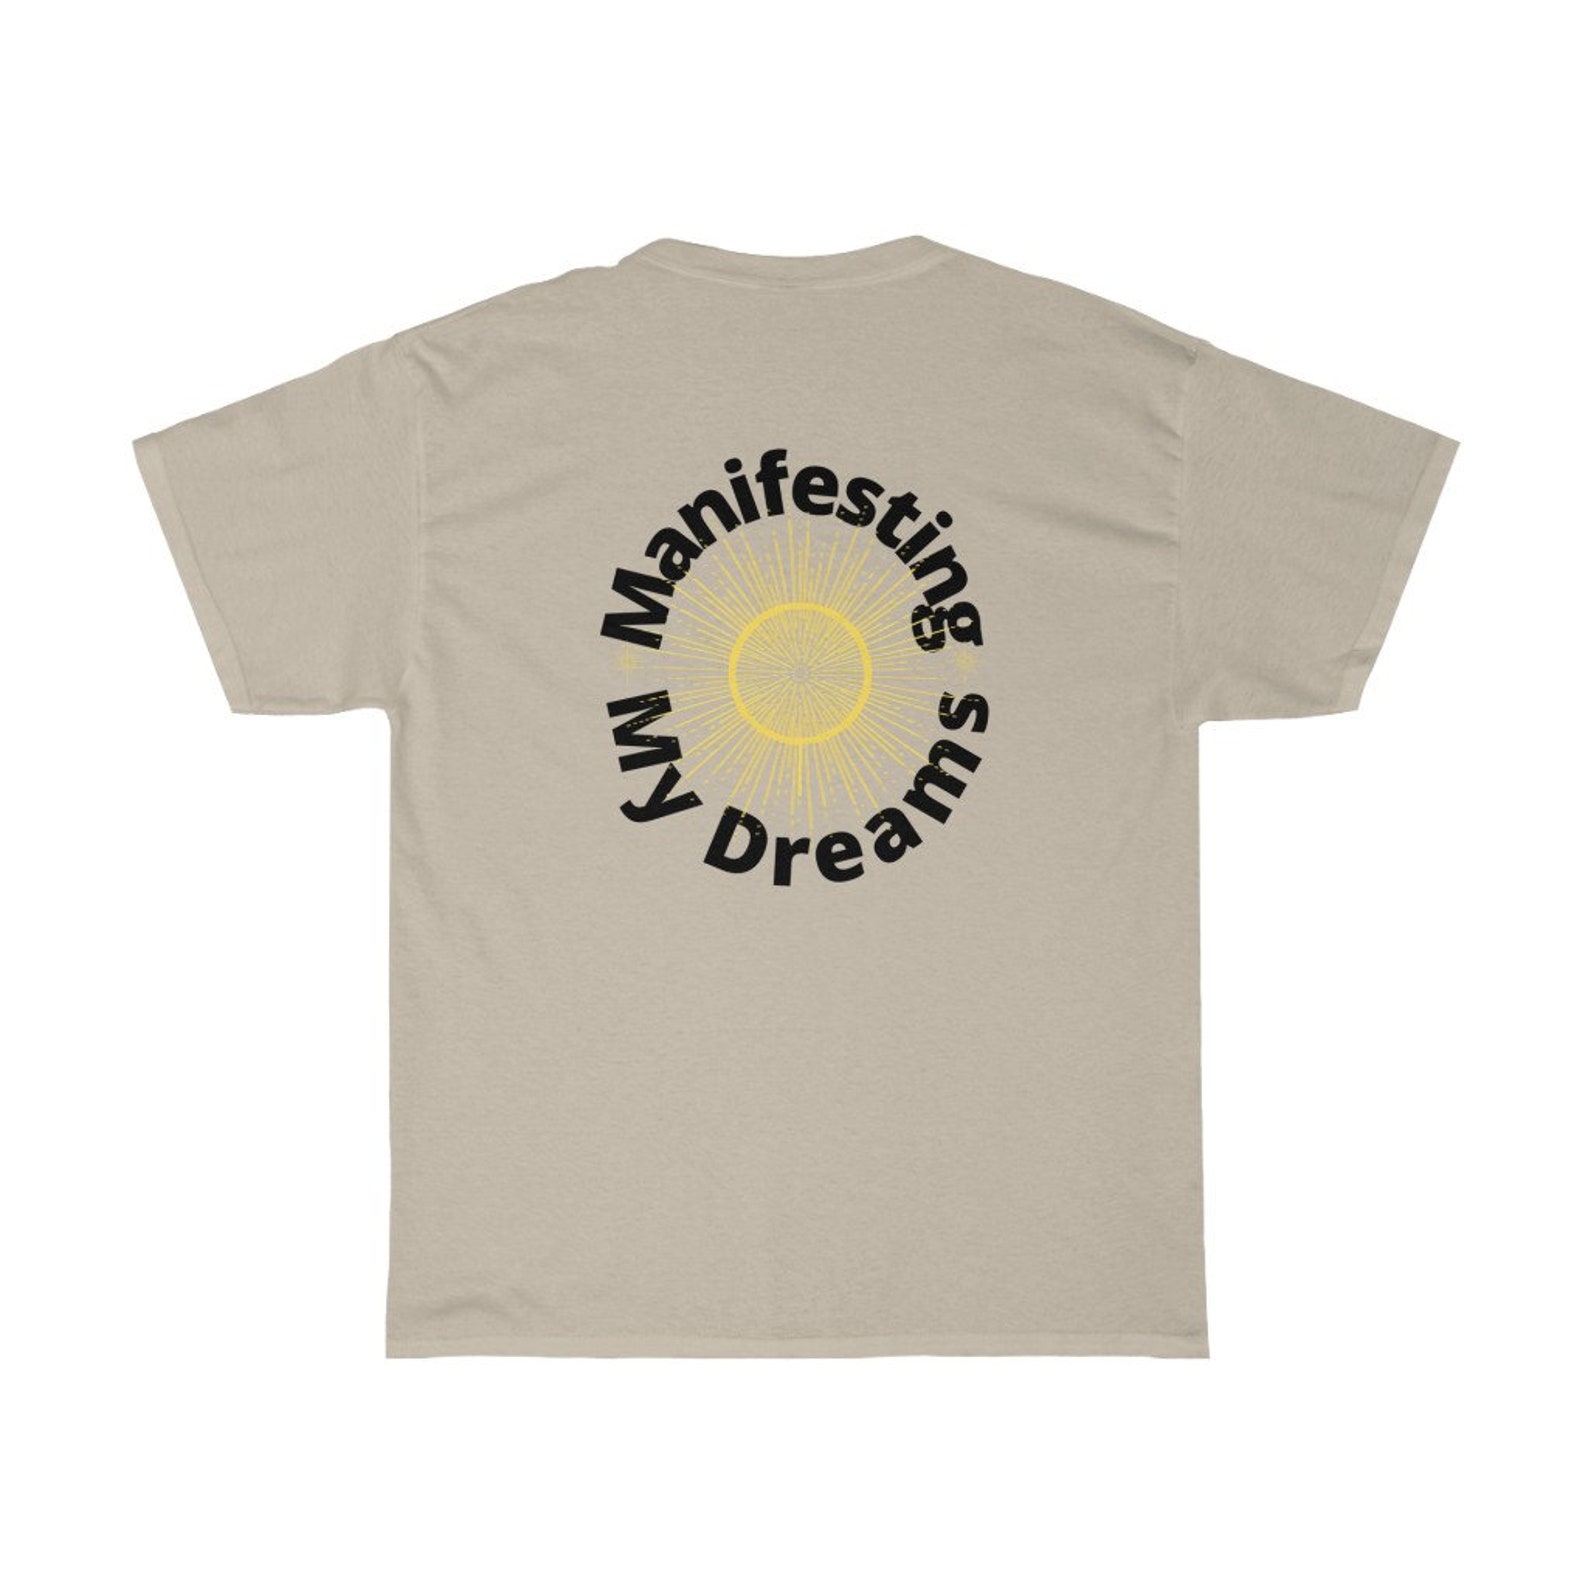 Manifesting My Dreams Tshirt Positive Tshirt Self Care Tshirt | Etsy